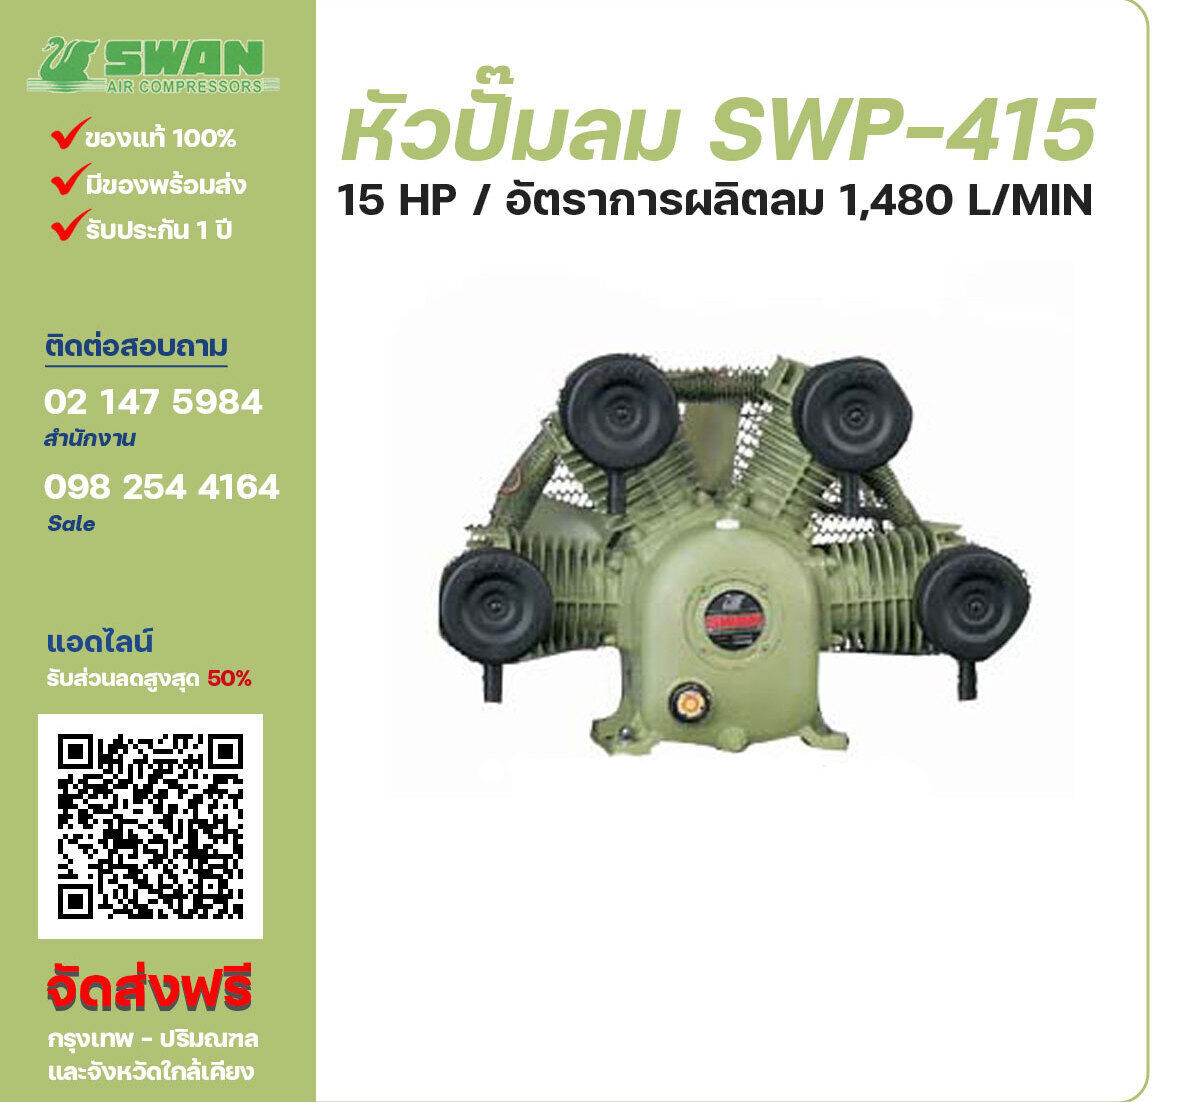 จำหน่ายหัวปั๊มลมสวอน ของแท้ 100% SWAN Bare Compressor รุ่น  SWP-415 ขนาด 15 แรงม้า อัตราการผลิตลม 1,480 ลิตร / นาที รับประกัน 3 เดือน ตามเงื่อนไขของบริษัทฯจัดส่งฟรี กรุงเทพ-ปริมณฑล